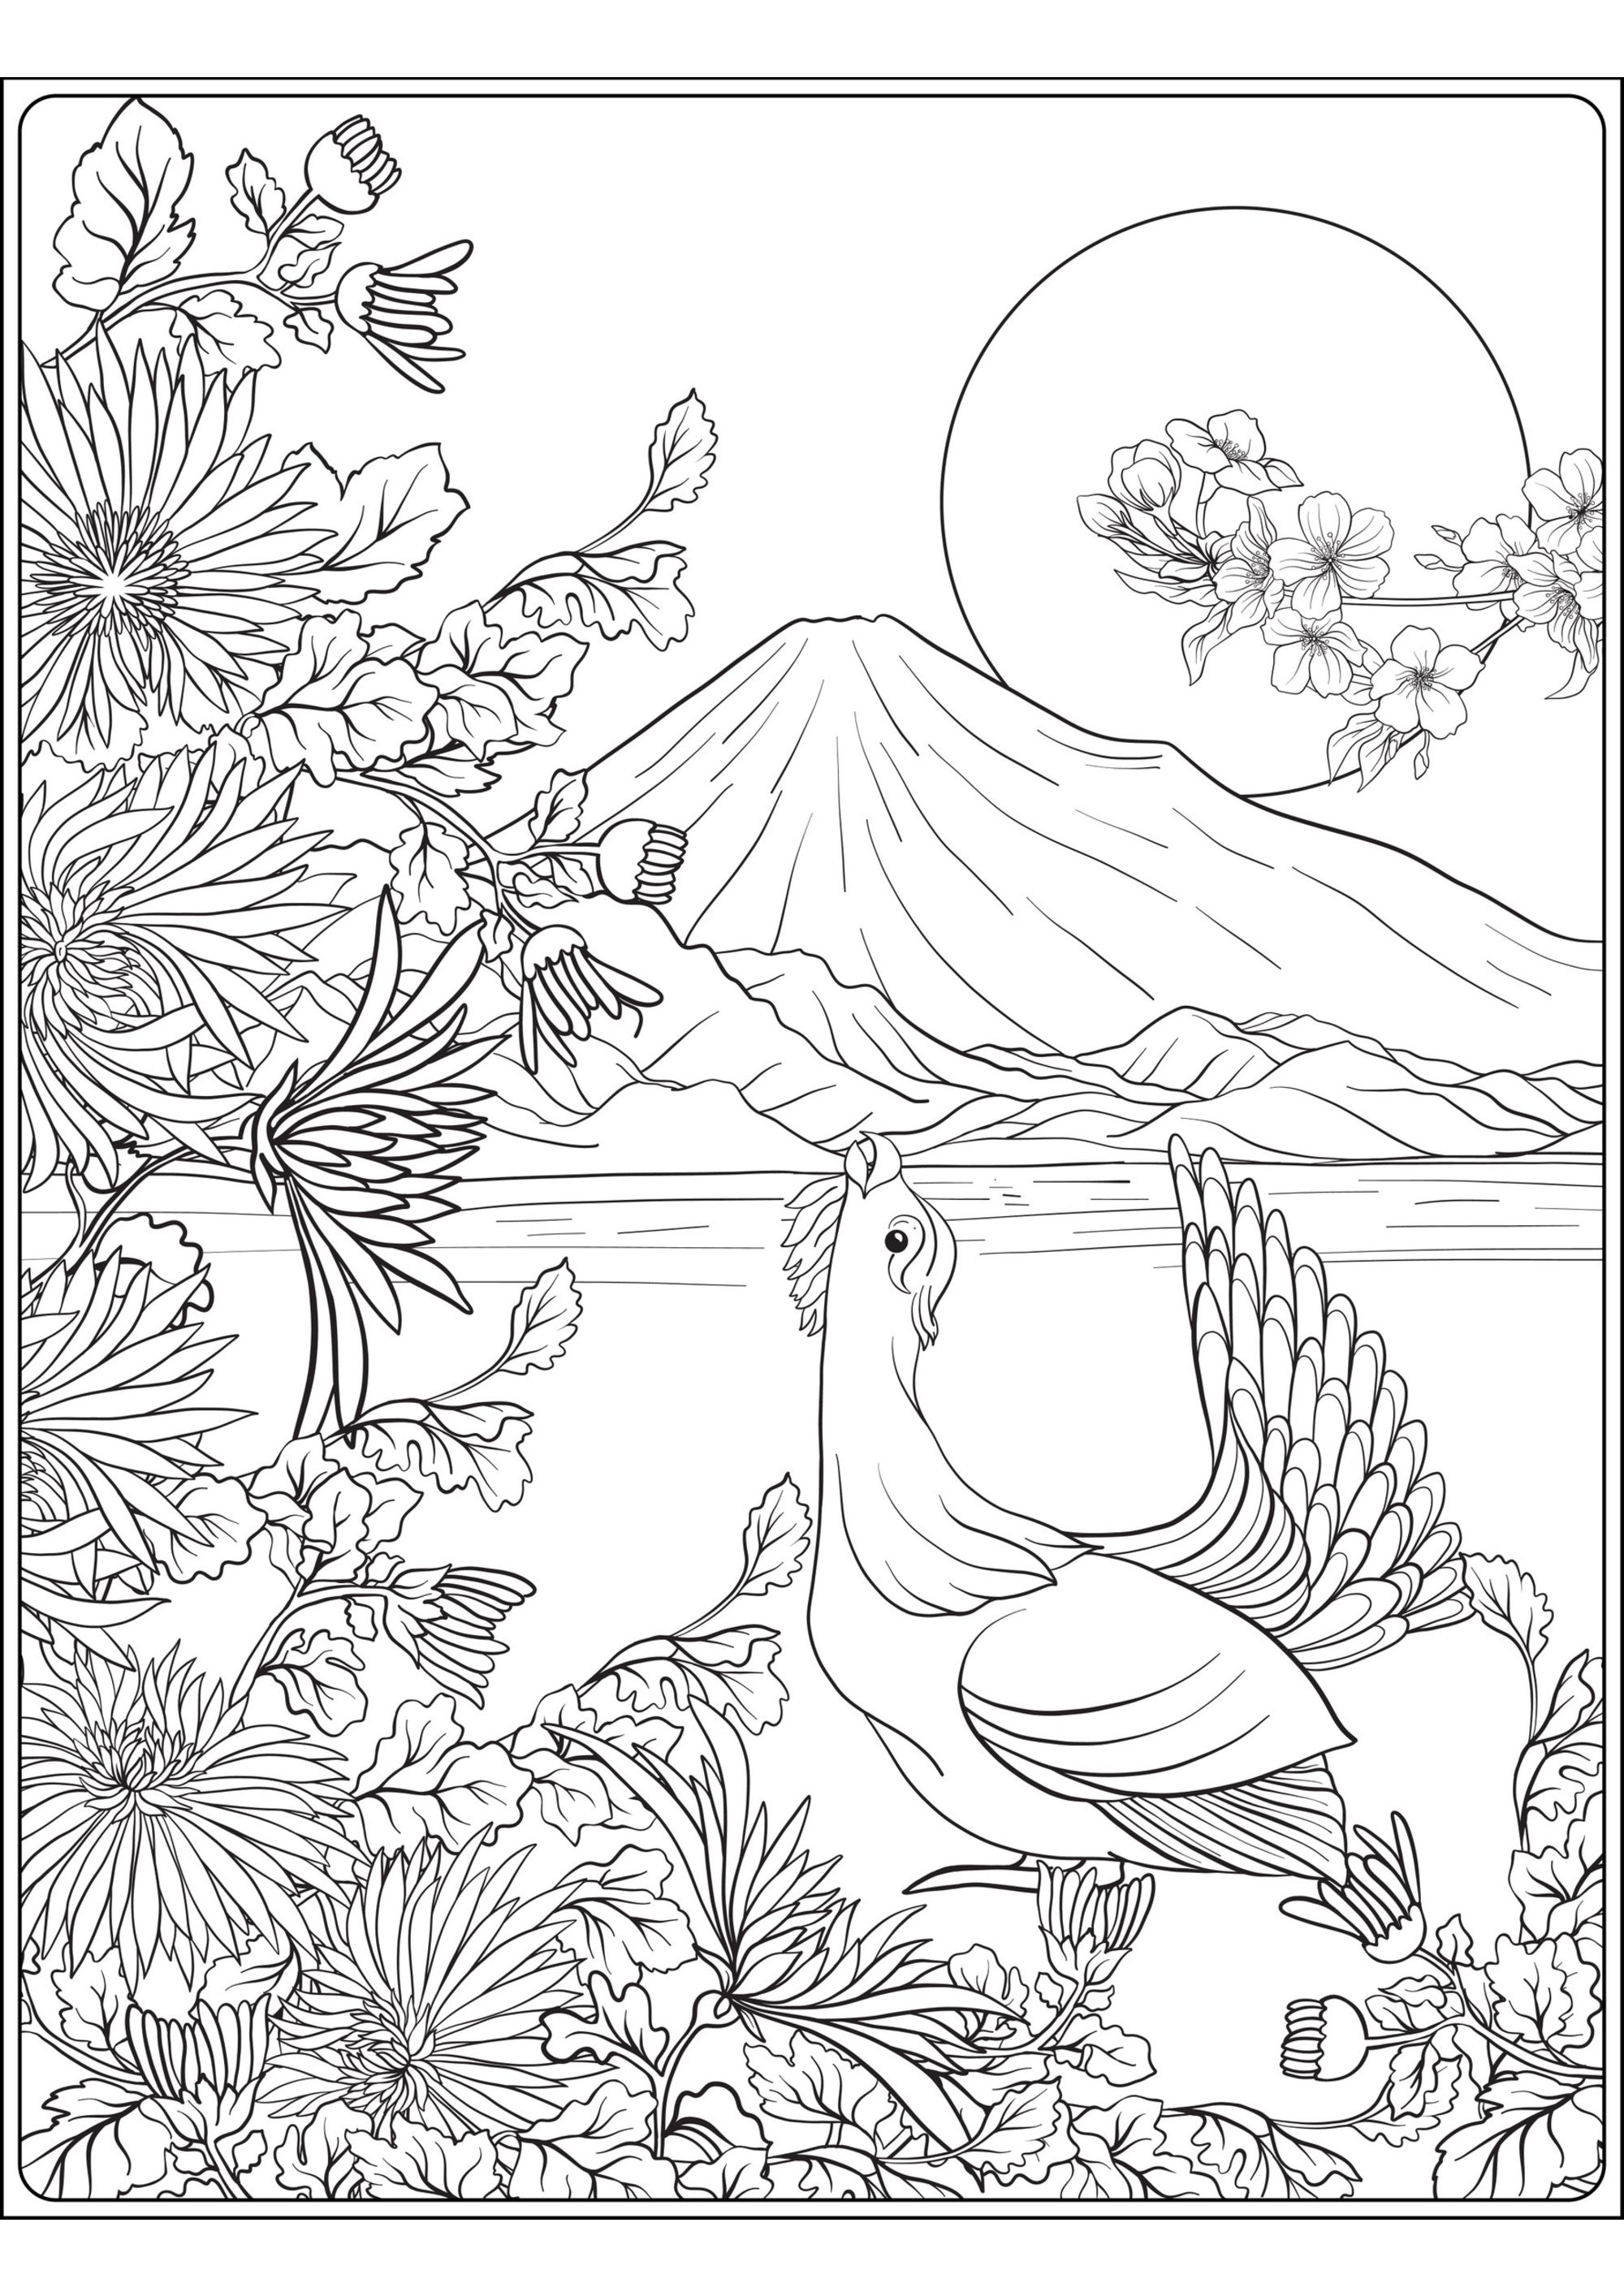 Monte Fuji e uccello. Una splendida pagina da colorare sul tema del Giappone, con un uccello, il monte Fuji e un primo piano pieno di piante e fiori, Artista : Elena Besedina   Fonte : 123rf